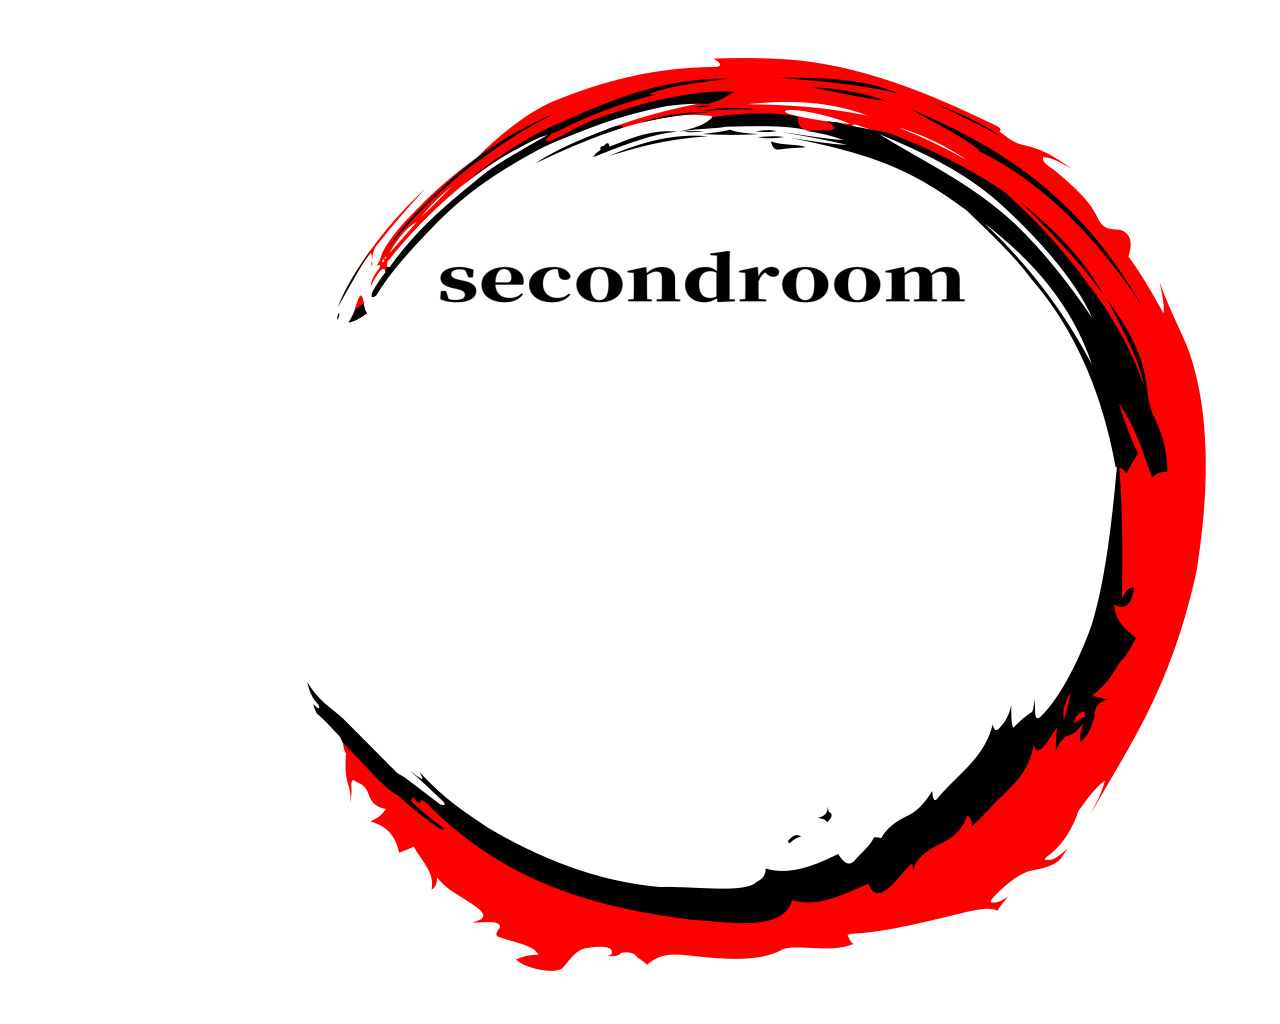  secondroom